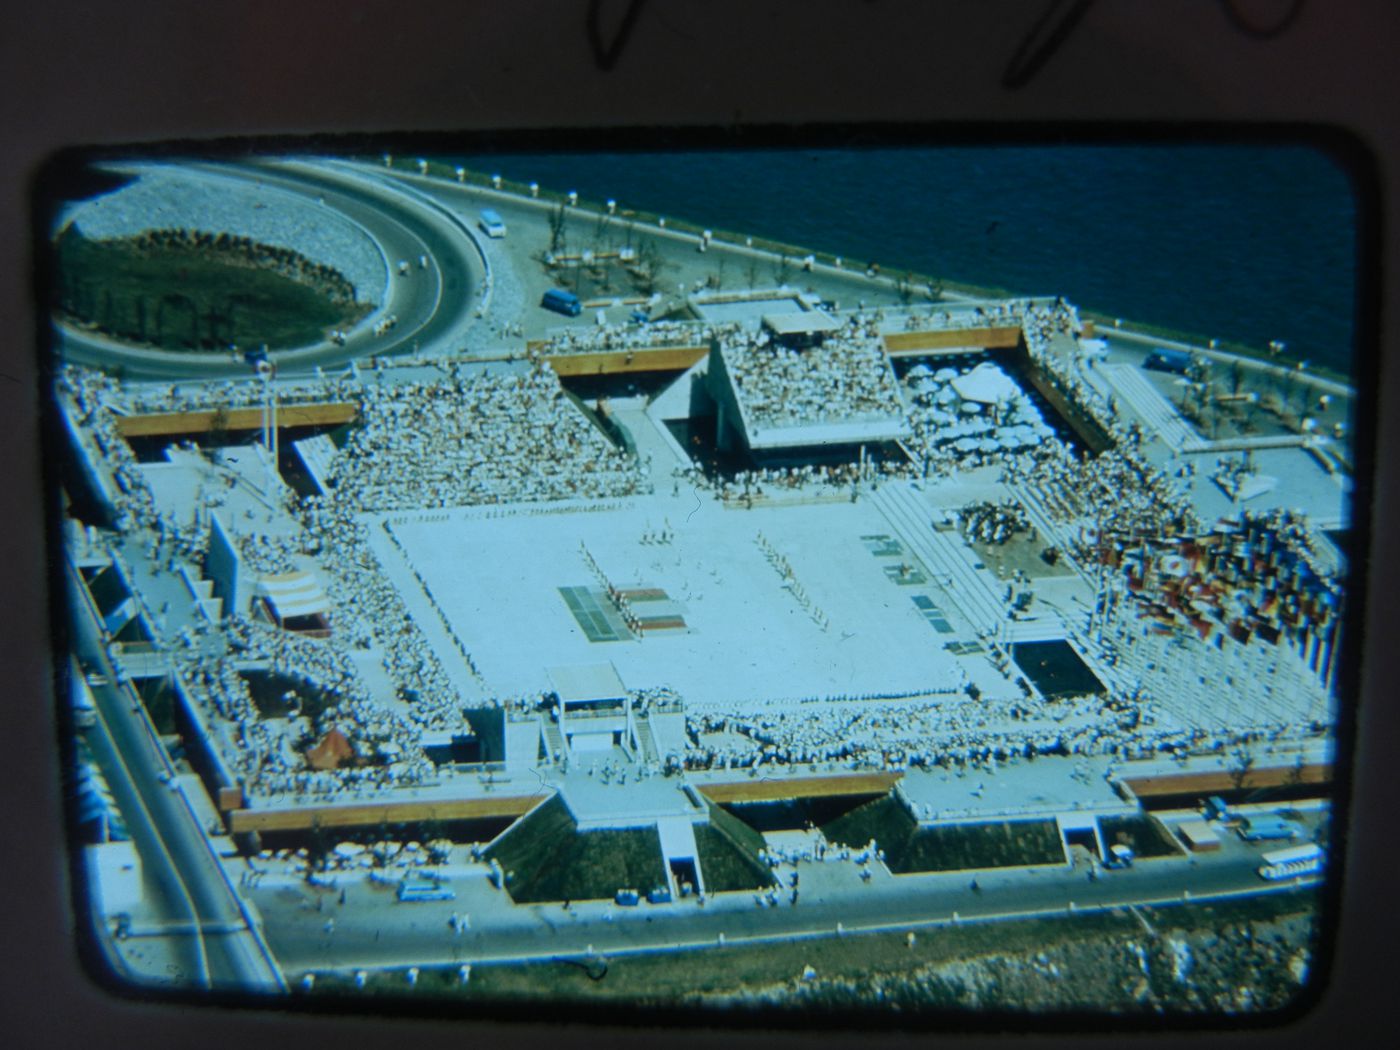 Aerial view of the Place des Nations, Expo 67, Montréal, Québec